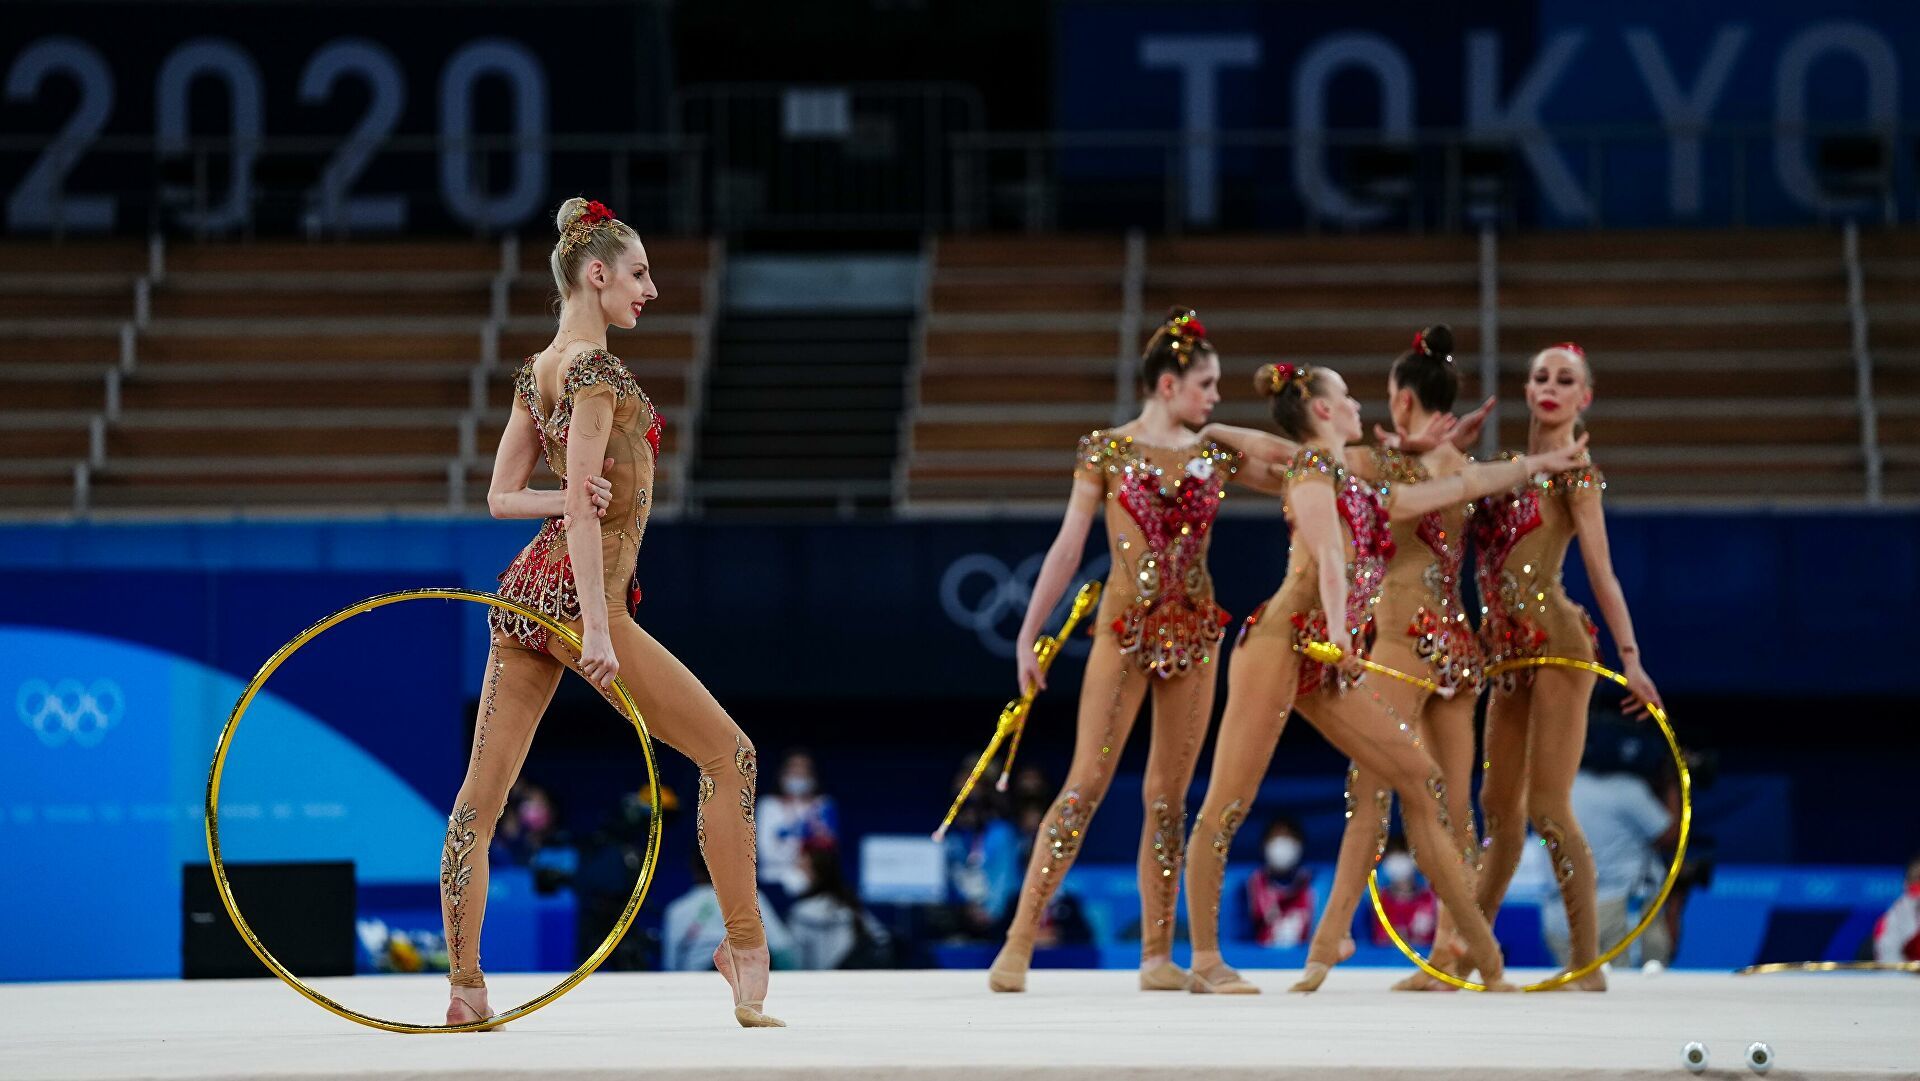 Художественная гимнастика, чемпионат мира 2021: расписание, где смотреть,  состав сборной России